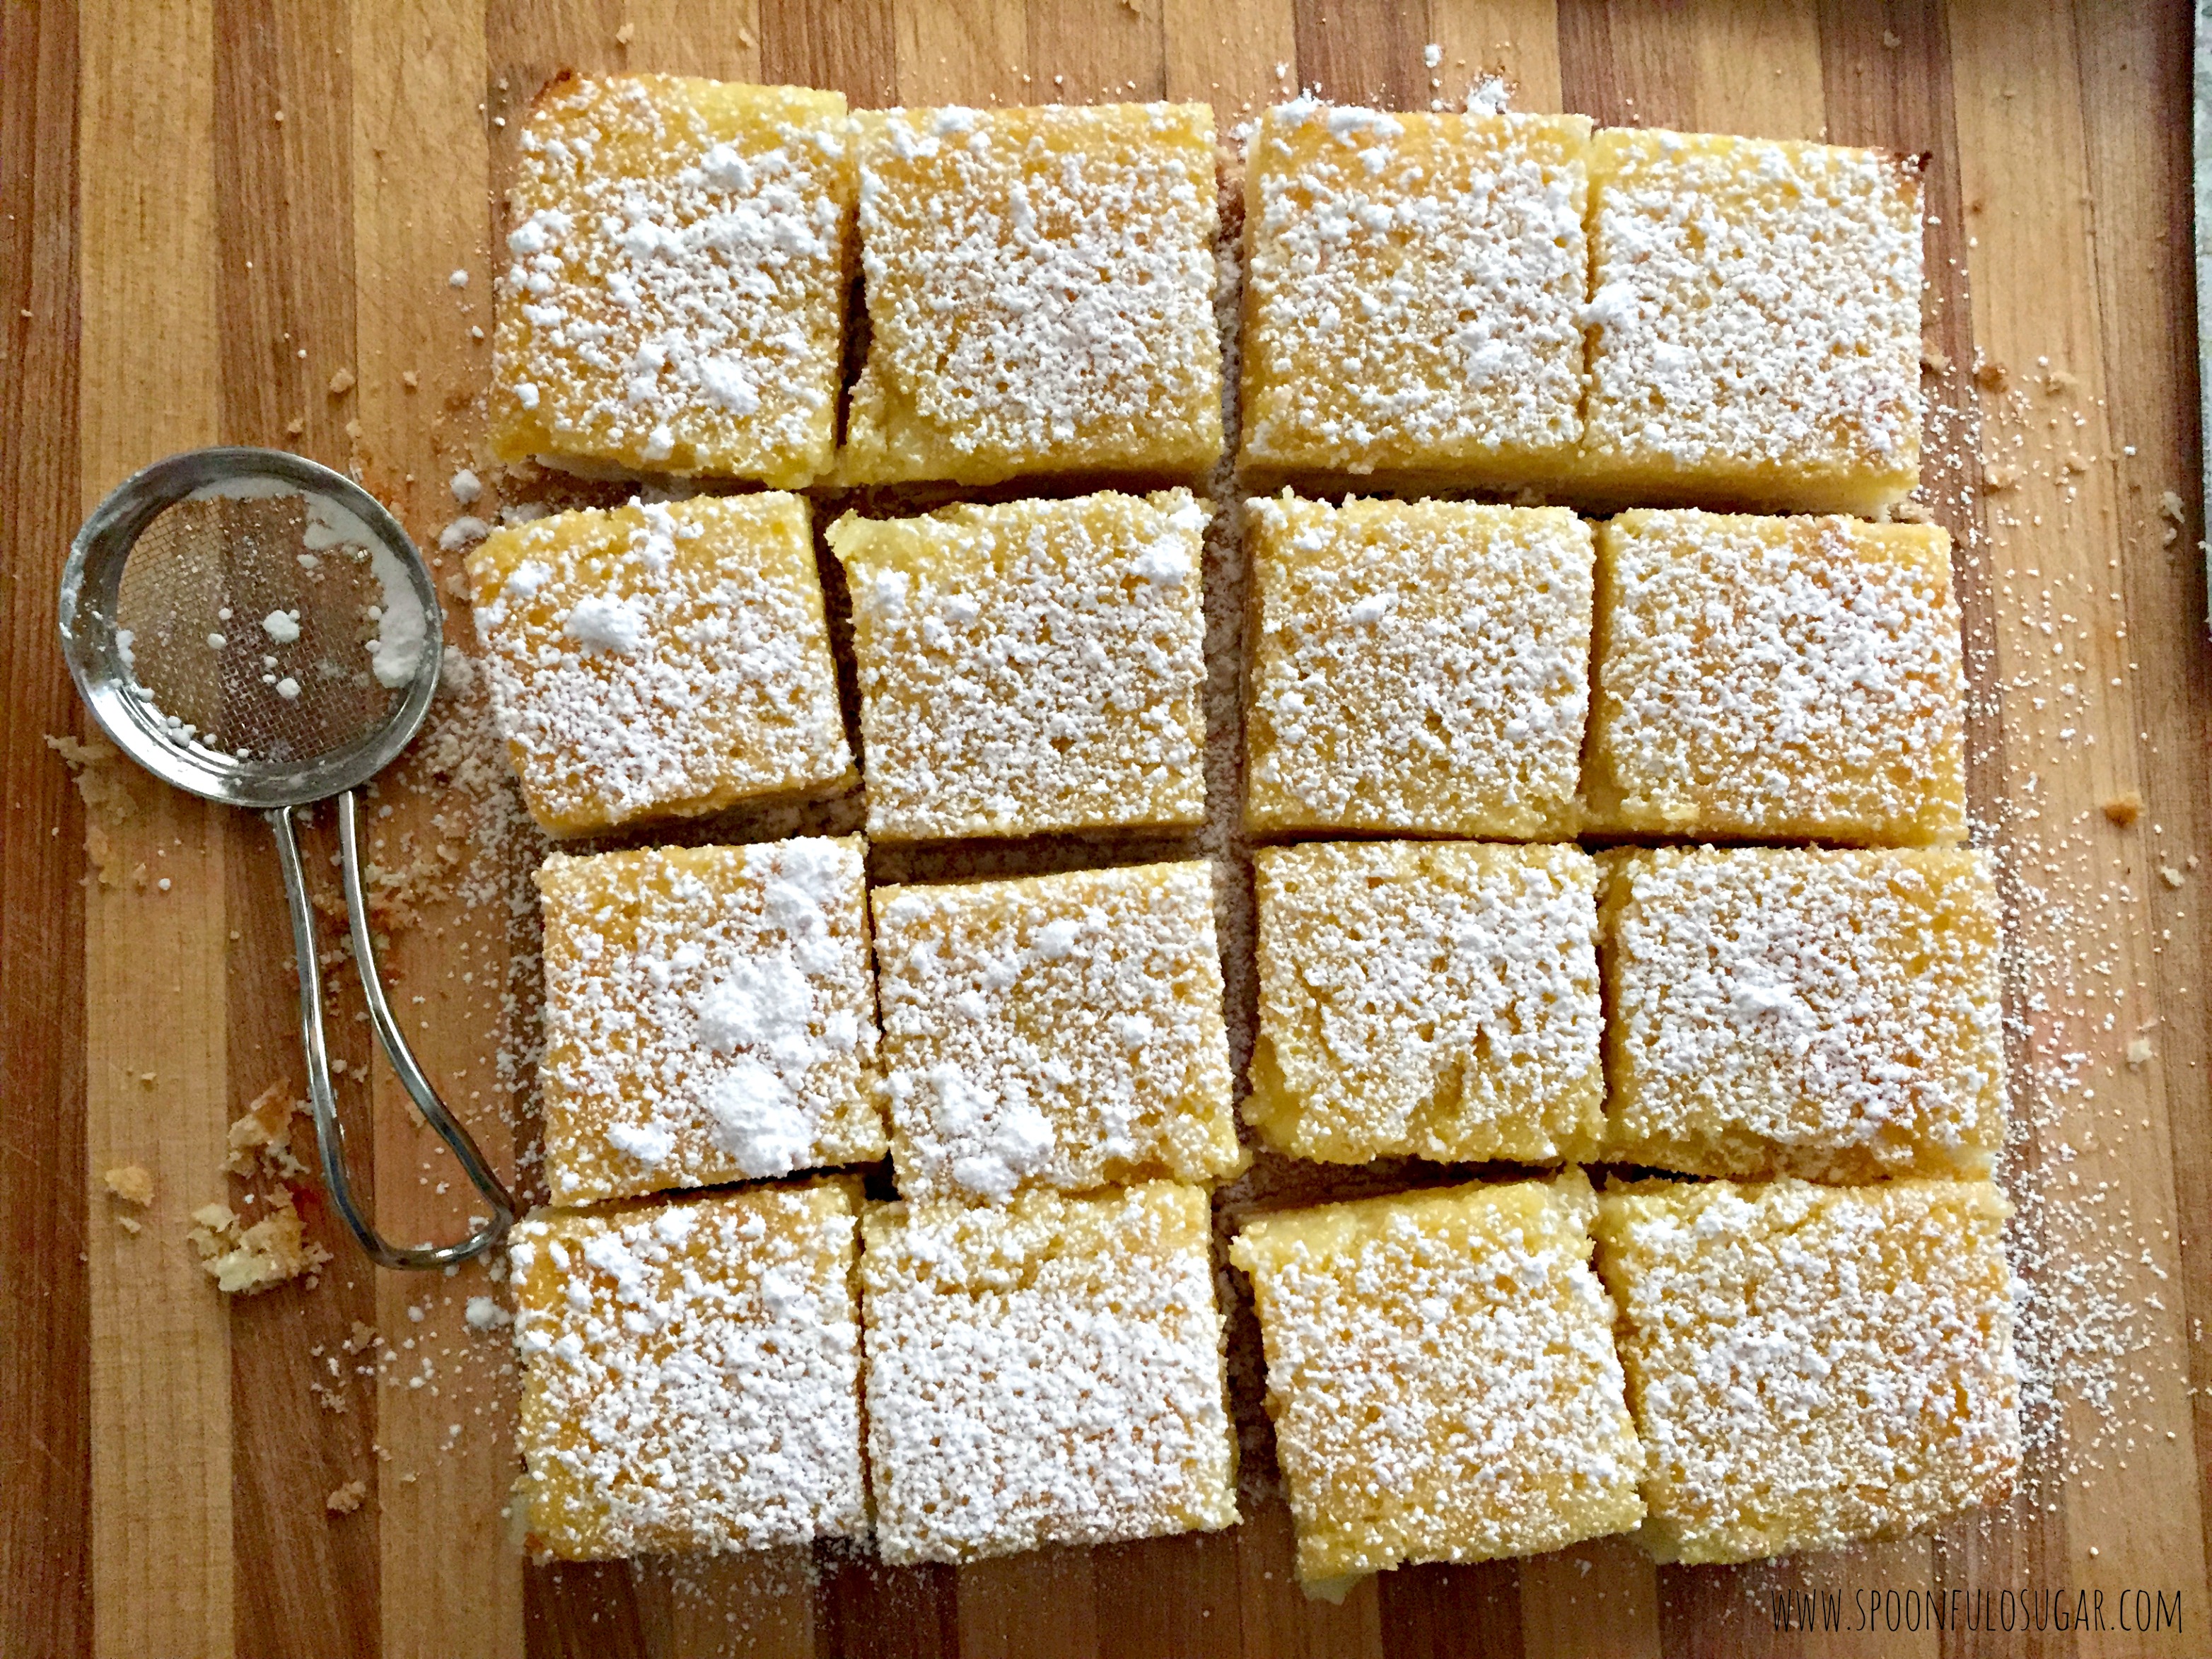 Lemon Squares | Spoonful of Sugar